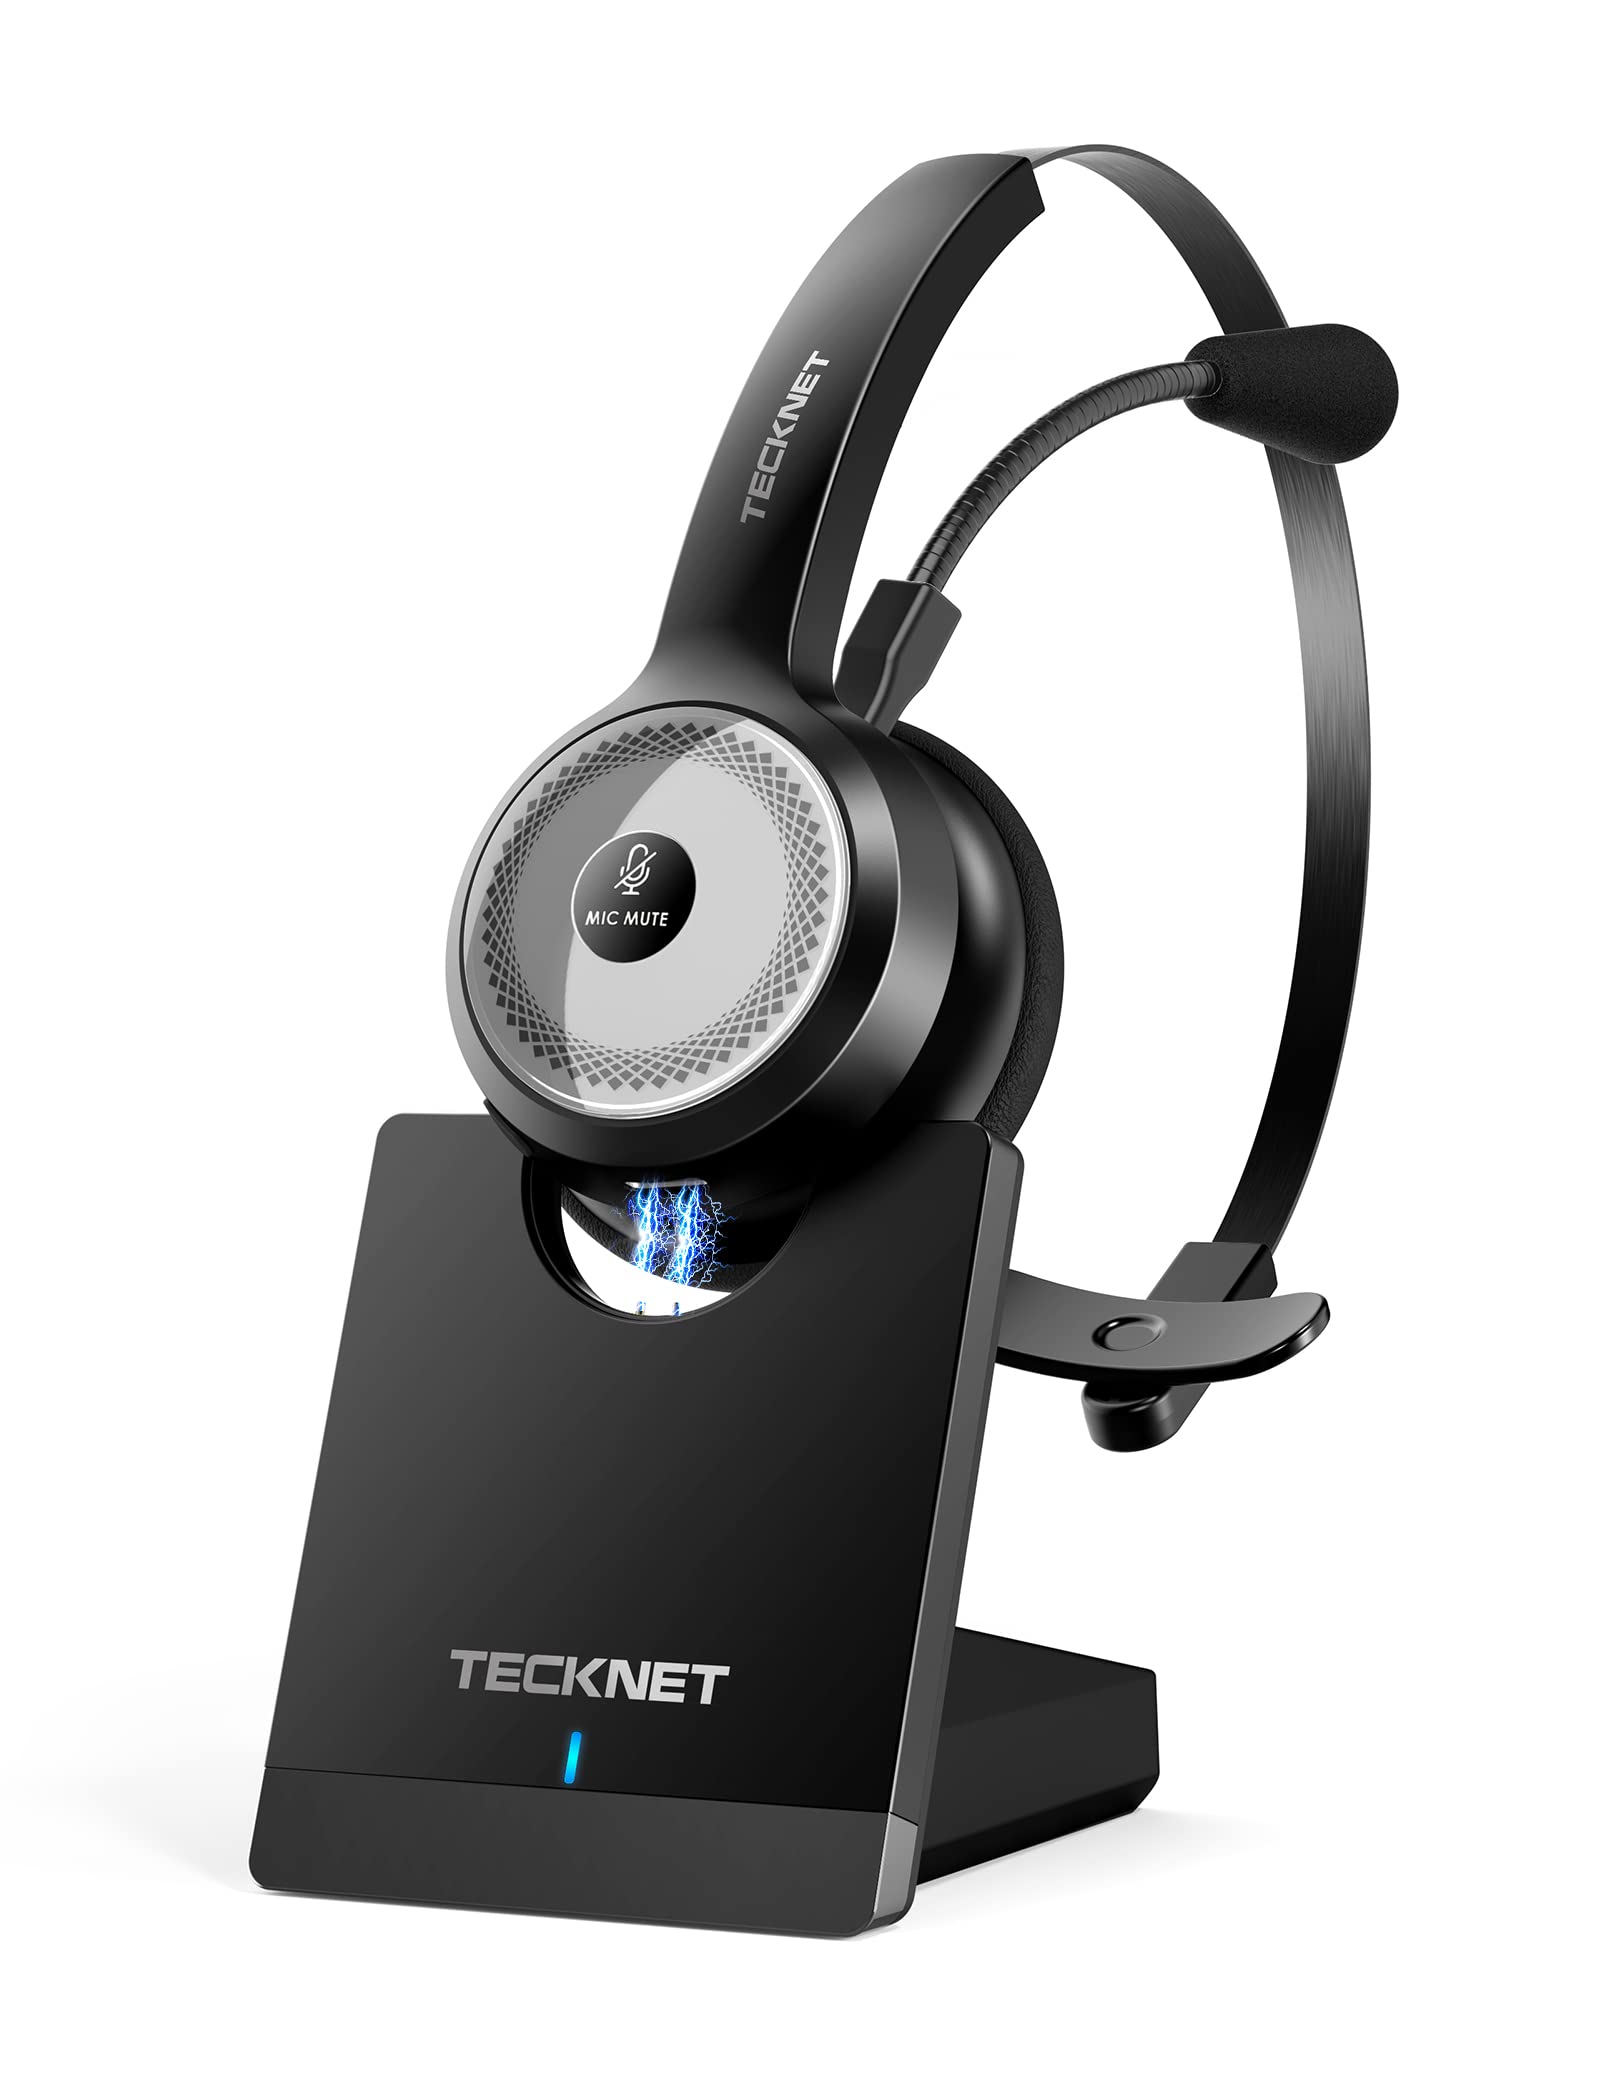  TECKNET ワイヤレス Bluetooth 5.0 ヘッドセット、マイク付き、AI ノイズキャンセリングオンイヤーヘッドフォン、充電ベース付き、PC、携帯電話、コンピ...